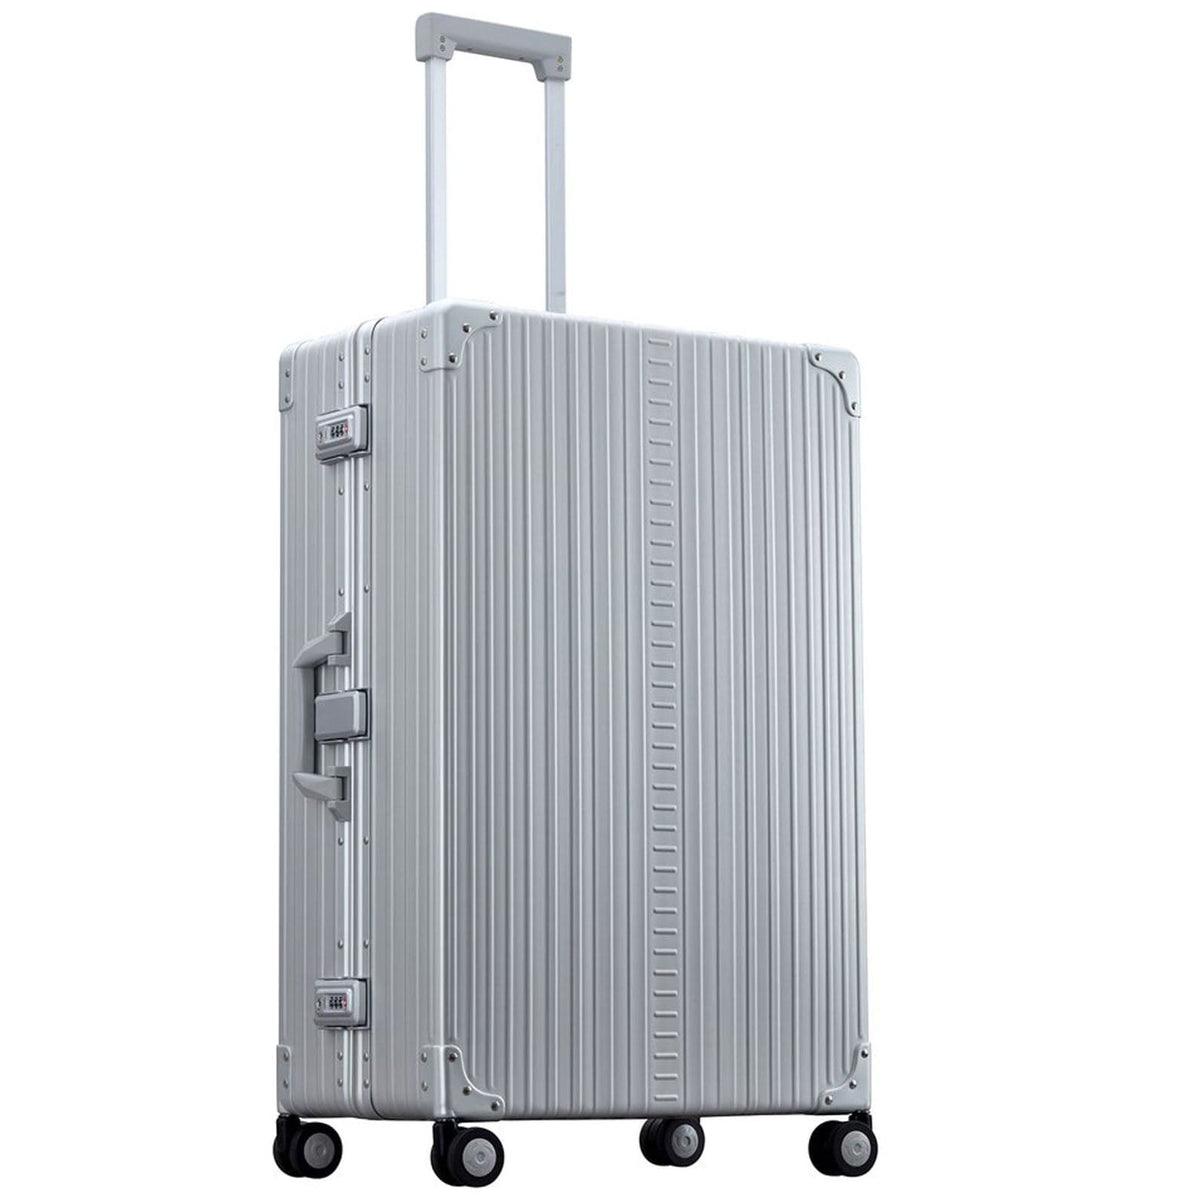 Aleon 30" Macro Traveler Aluminum Hardside Checked Luggage